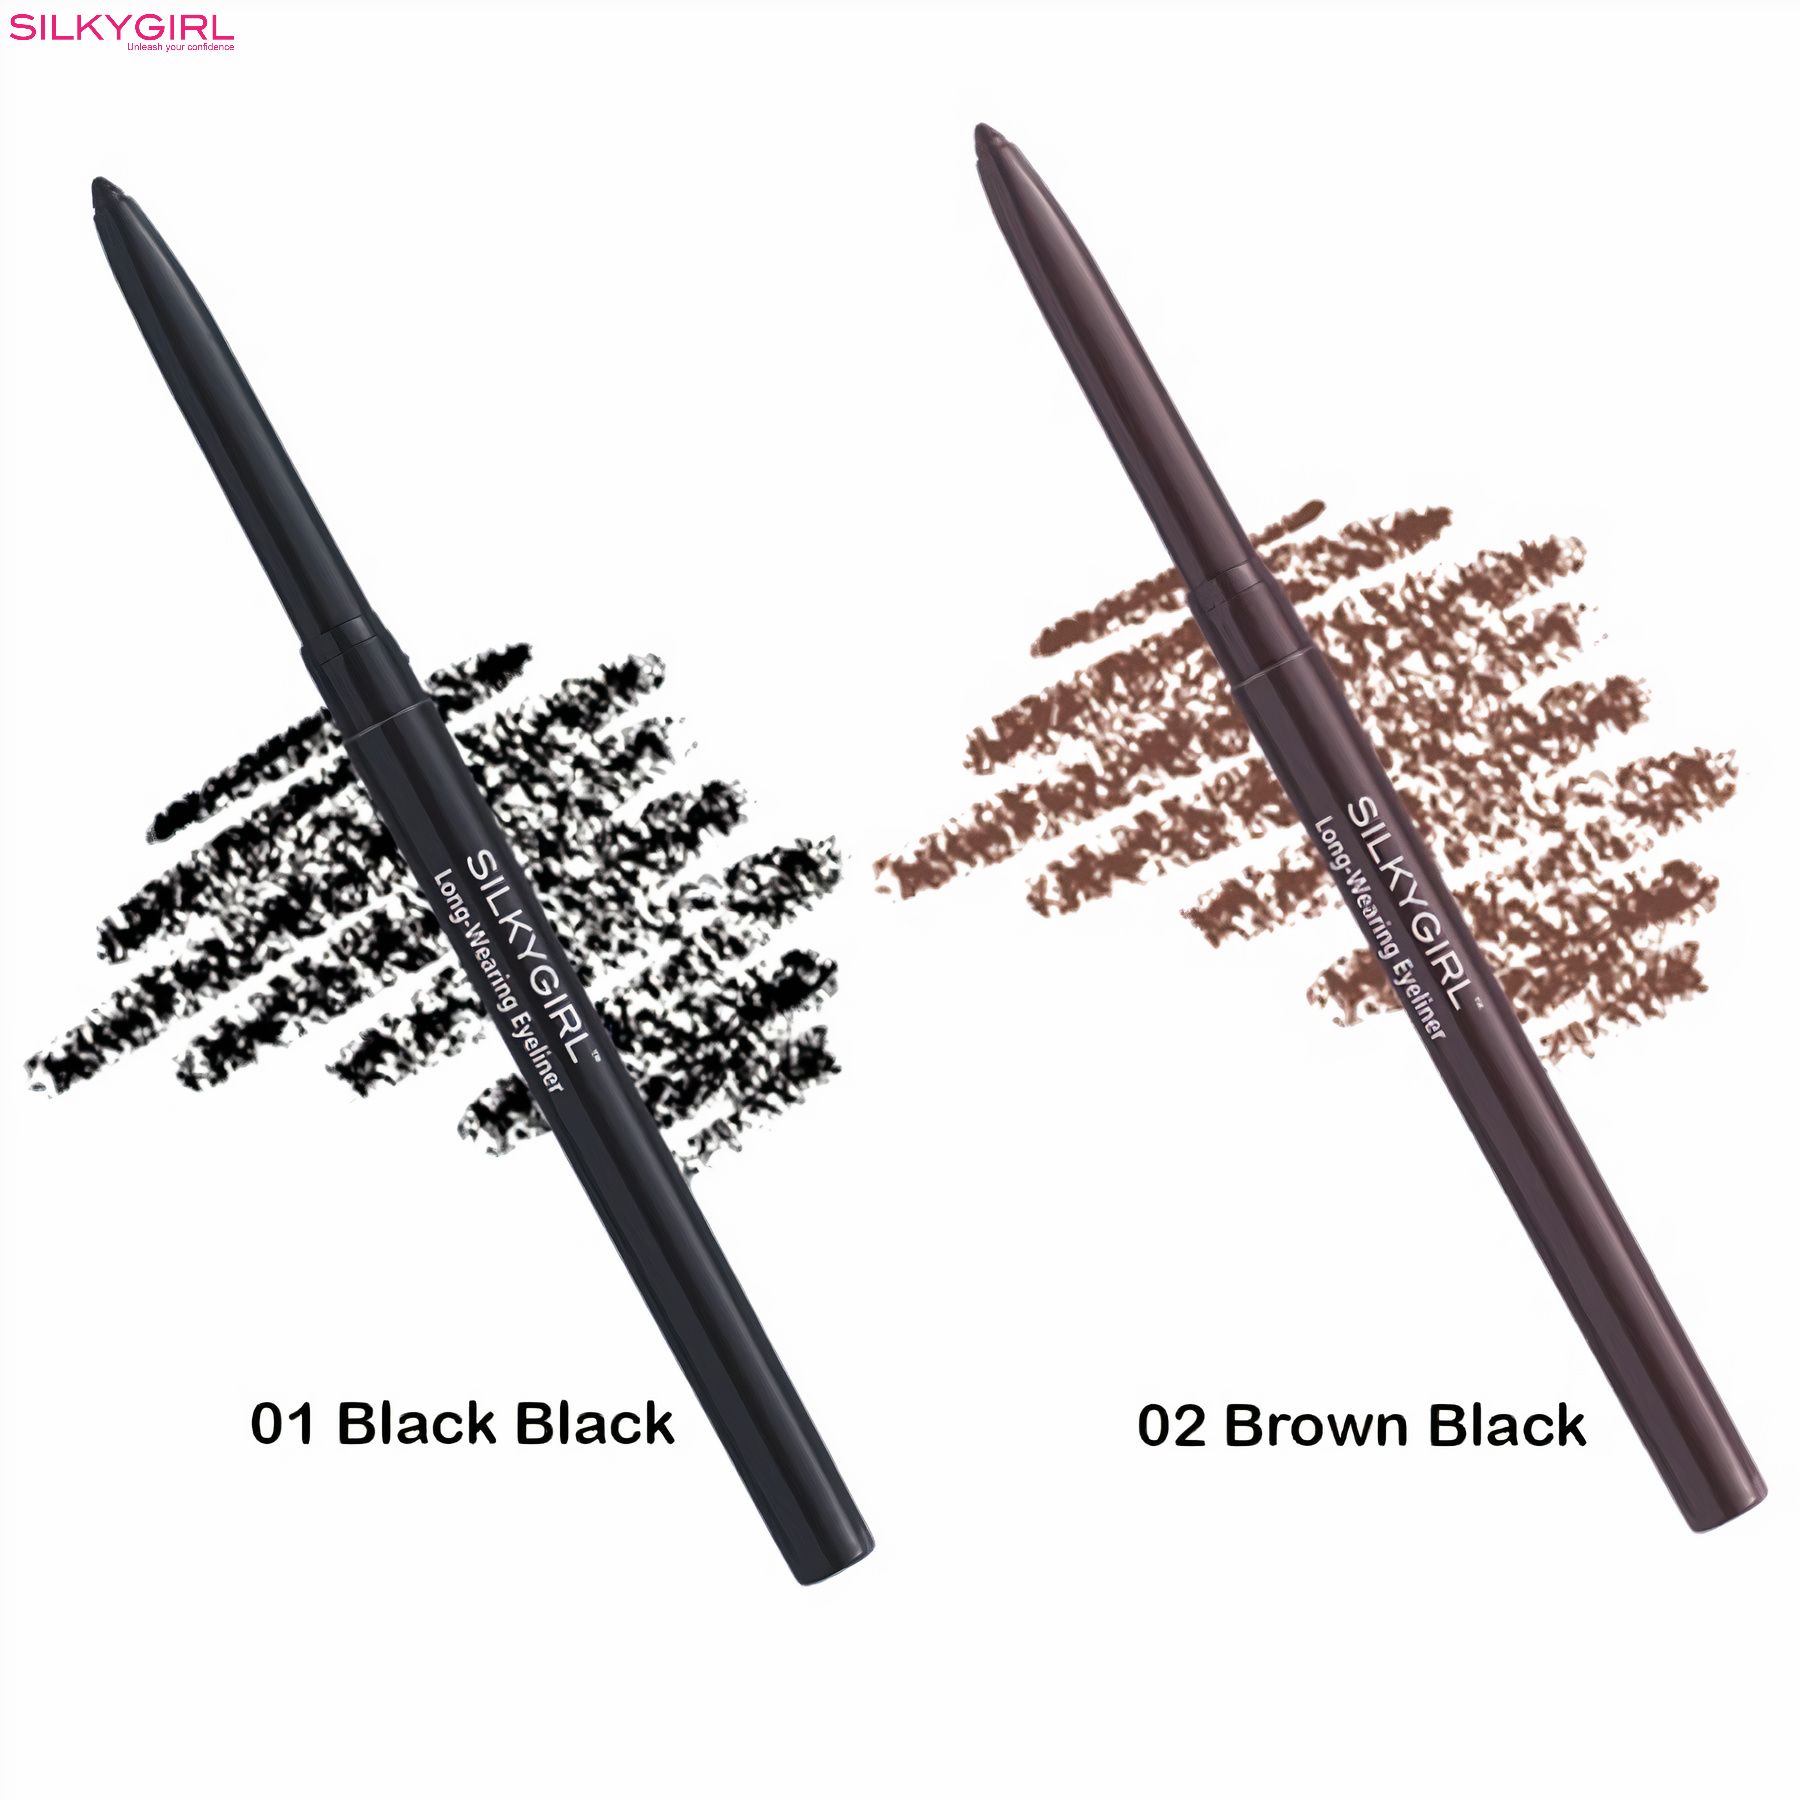 Sản phẩm có 2 màu là chì đen (Blackest Black) và chì nâu (Black Brown) phù hợp tone da phụ nữ châu Á.